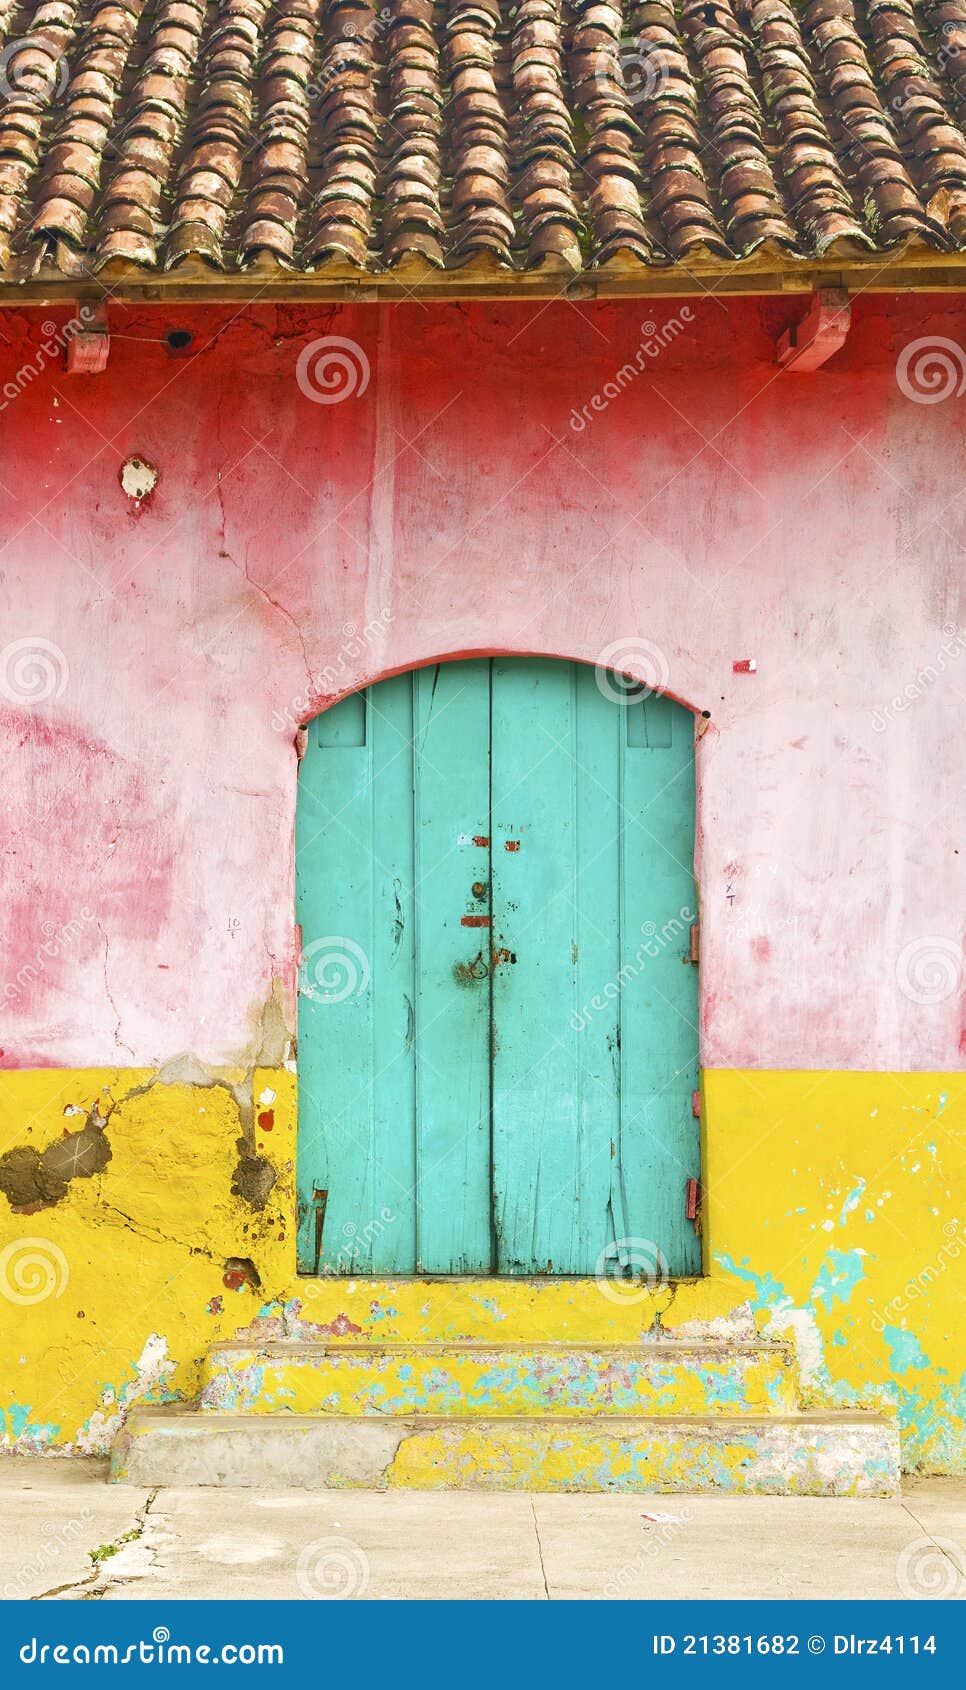 colorful rural house facade